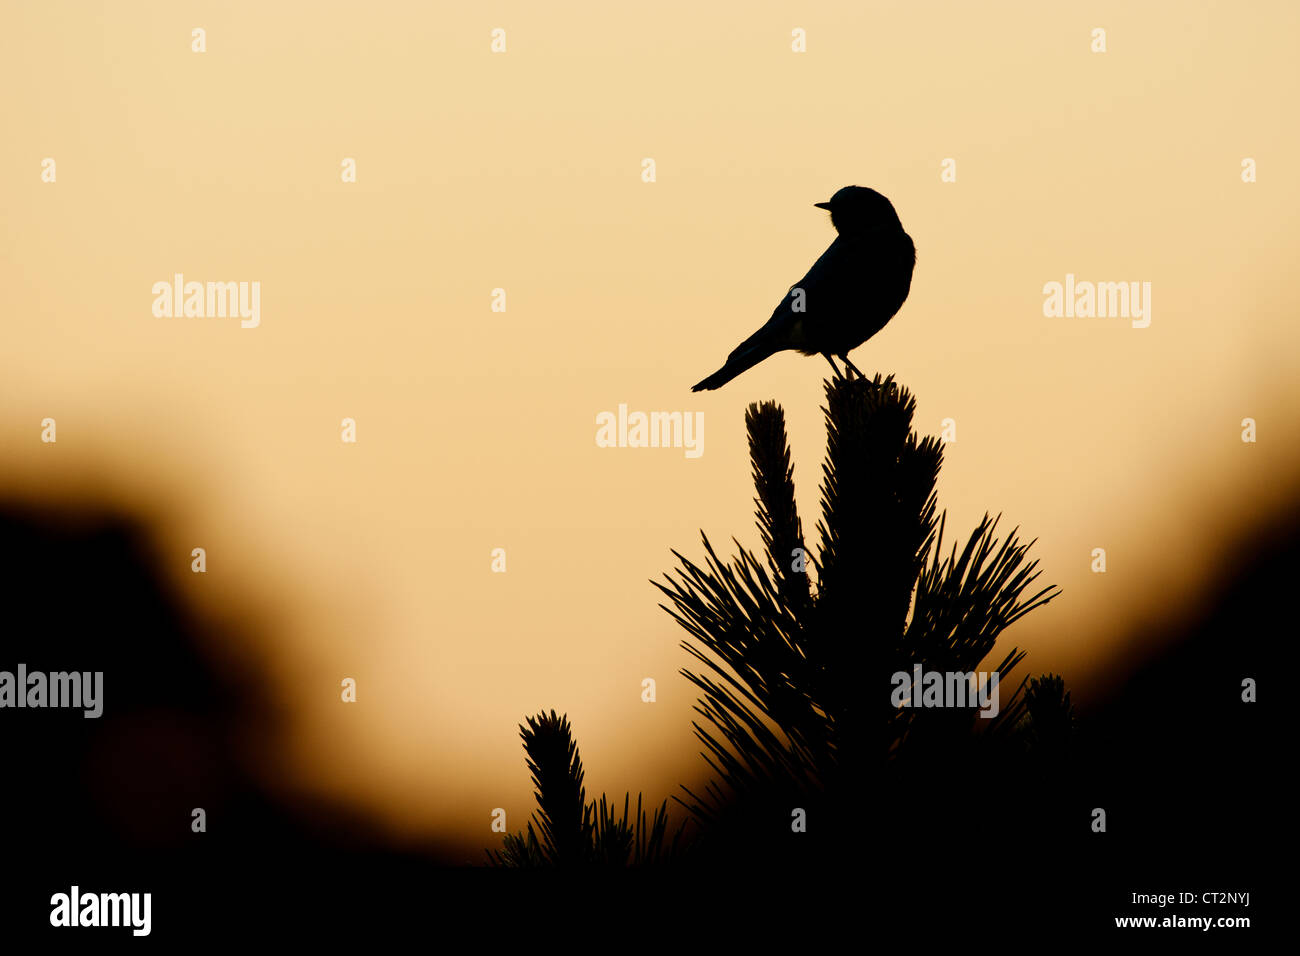 Mountain Bluebird au coucher du soleil dans le parc national des montagnes Rocheuses oiseau songbird silhouette ornithologie nature Banque D'Images